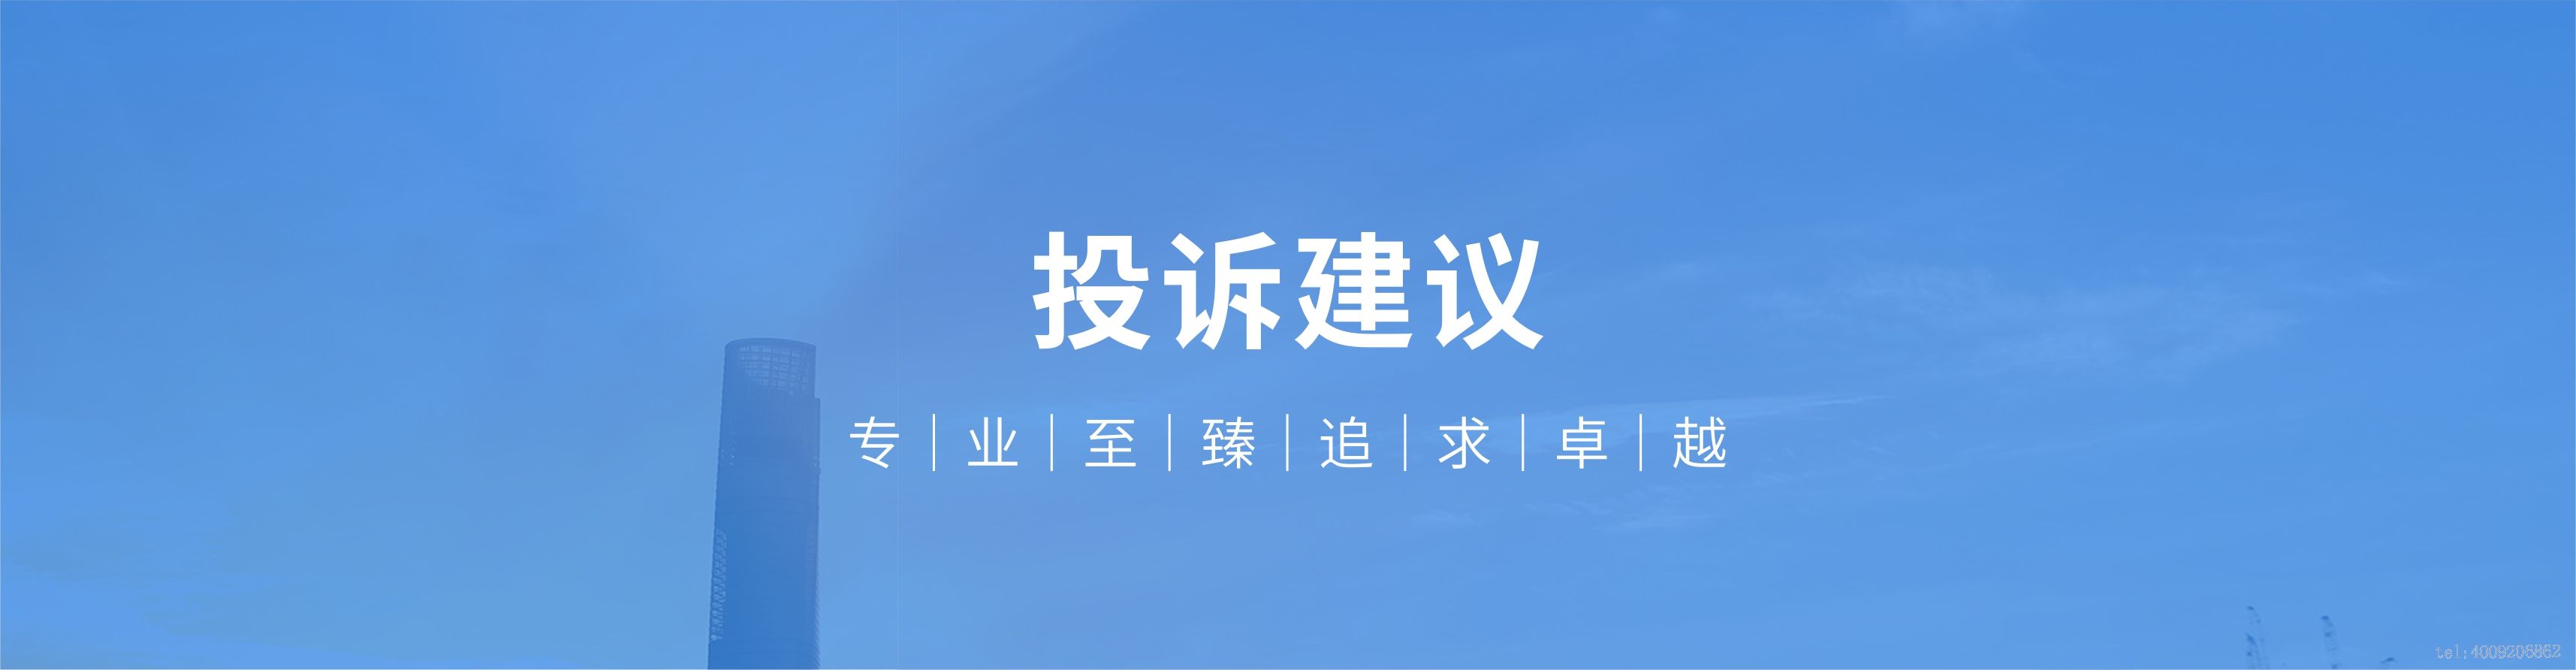 重庆西林叉车-西林叉车重庆销售公司(图1)